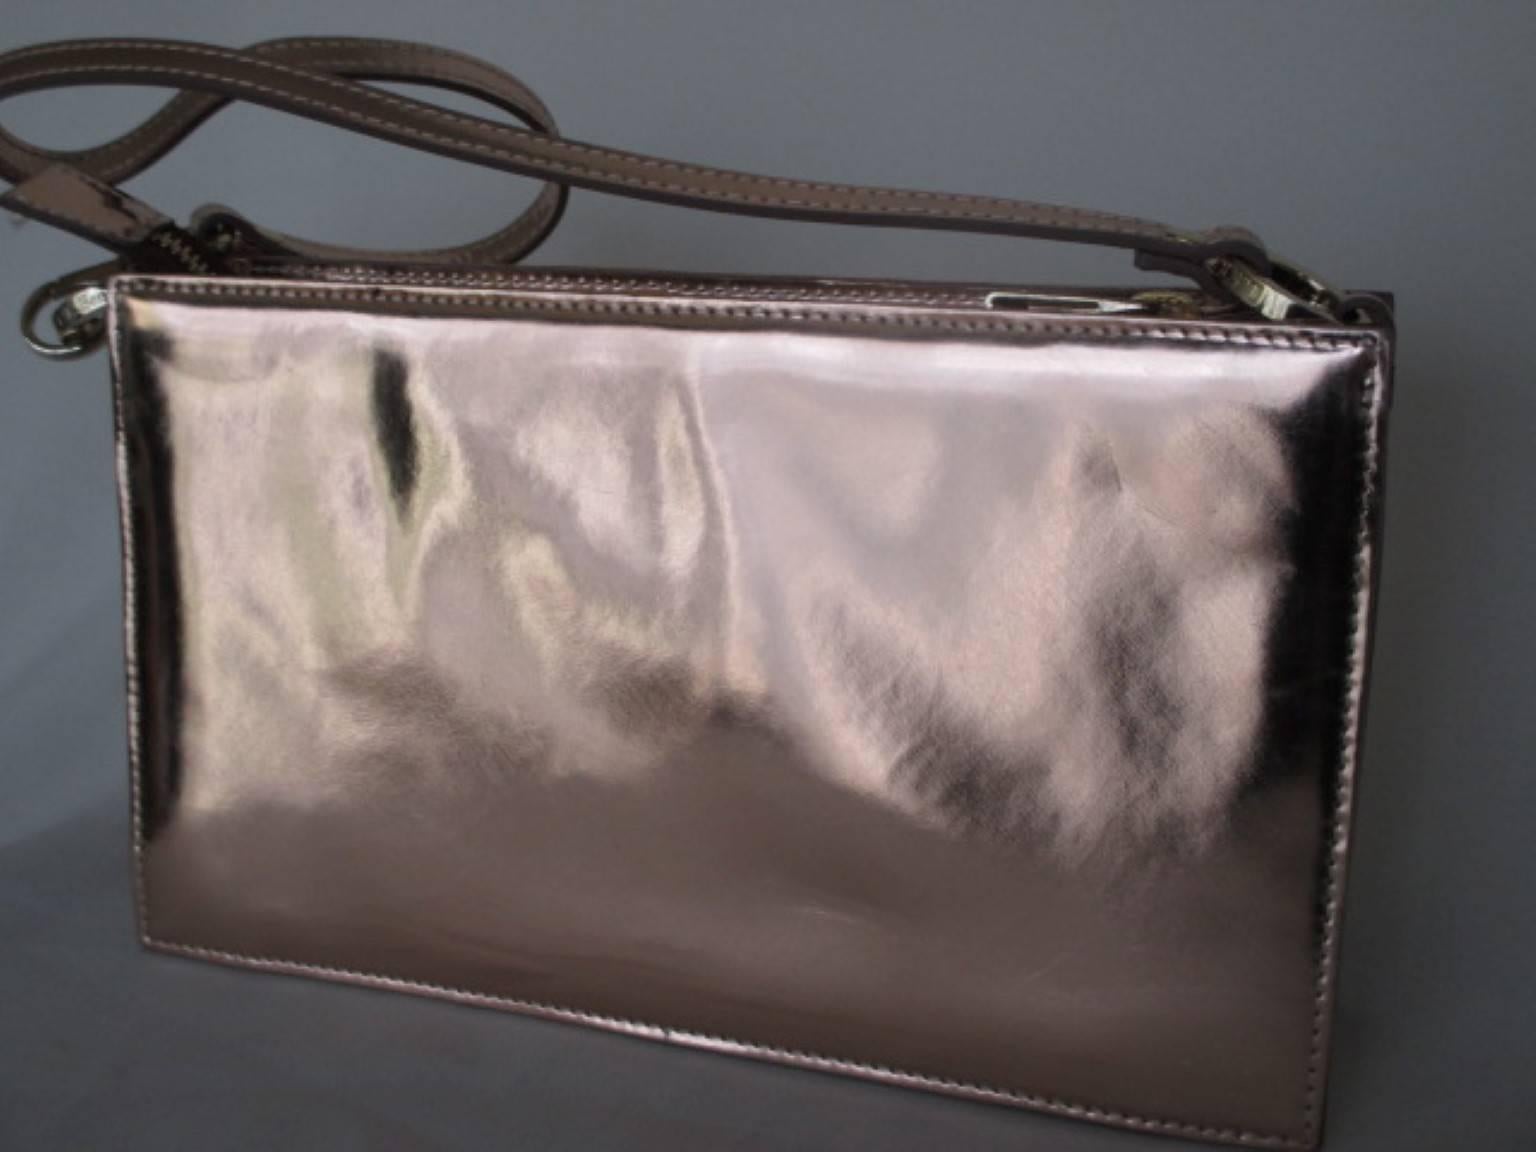 Le sac Posy de LK Bennett est un sac métallique or rose en cuir fini miroir. Il peut être porté comme une pochette ou suspendu à l'épaule, au coude ou au poignet
Ce sac  possède une fermeture éclair intérieure, une bandoulière et une légère usure